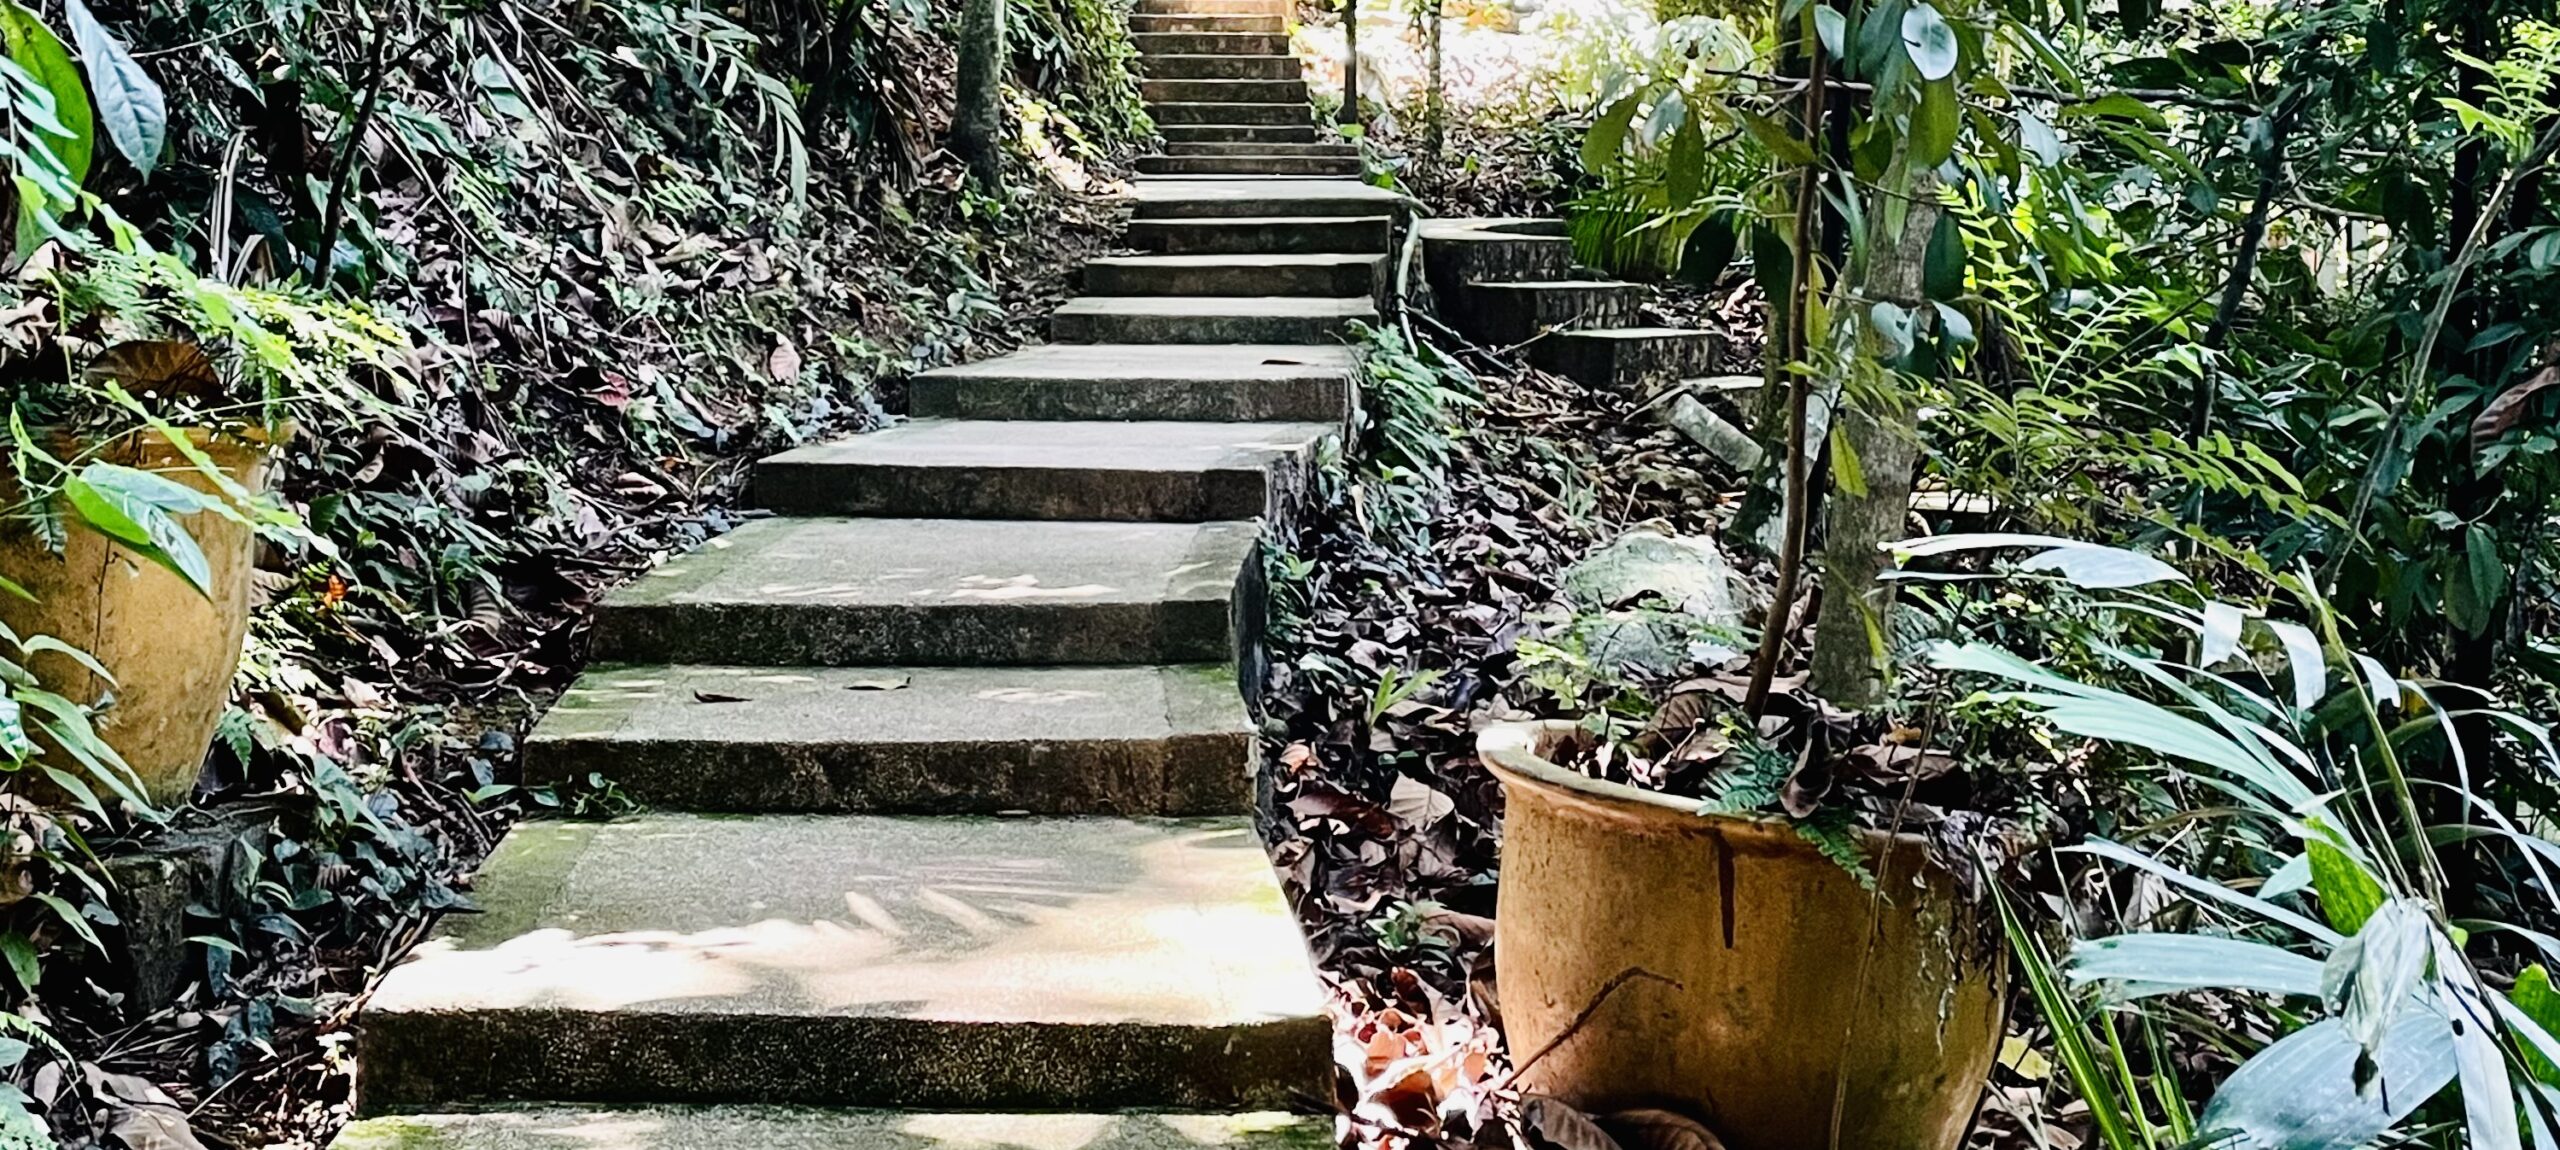 Escaliers dans la végétation dans le Parc de Bukit Nanas à Kuala Lumpur en Malaisie